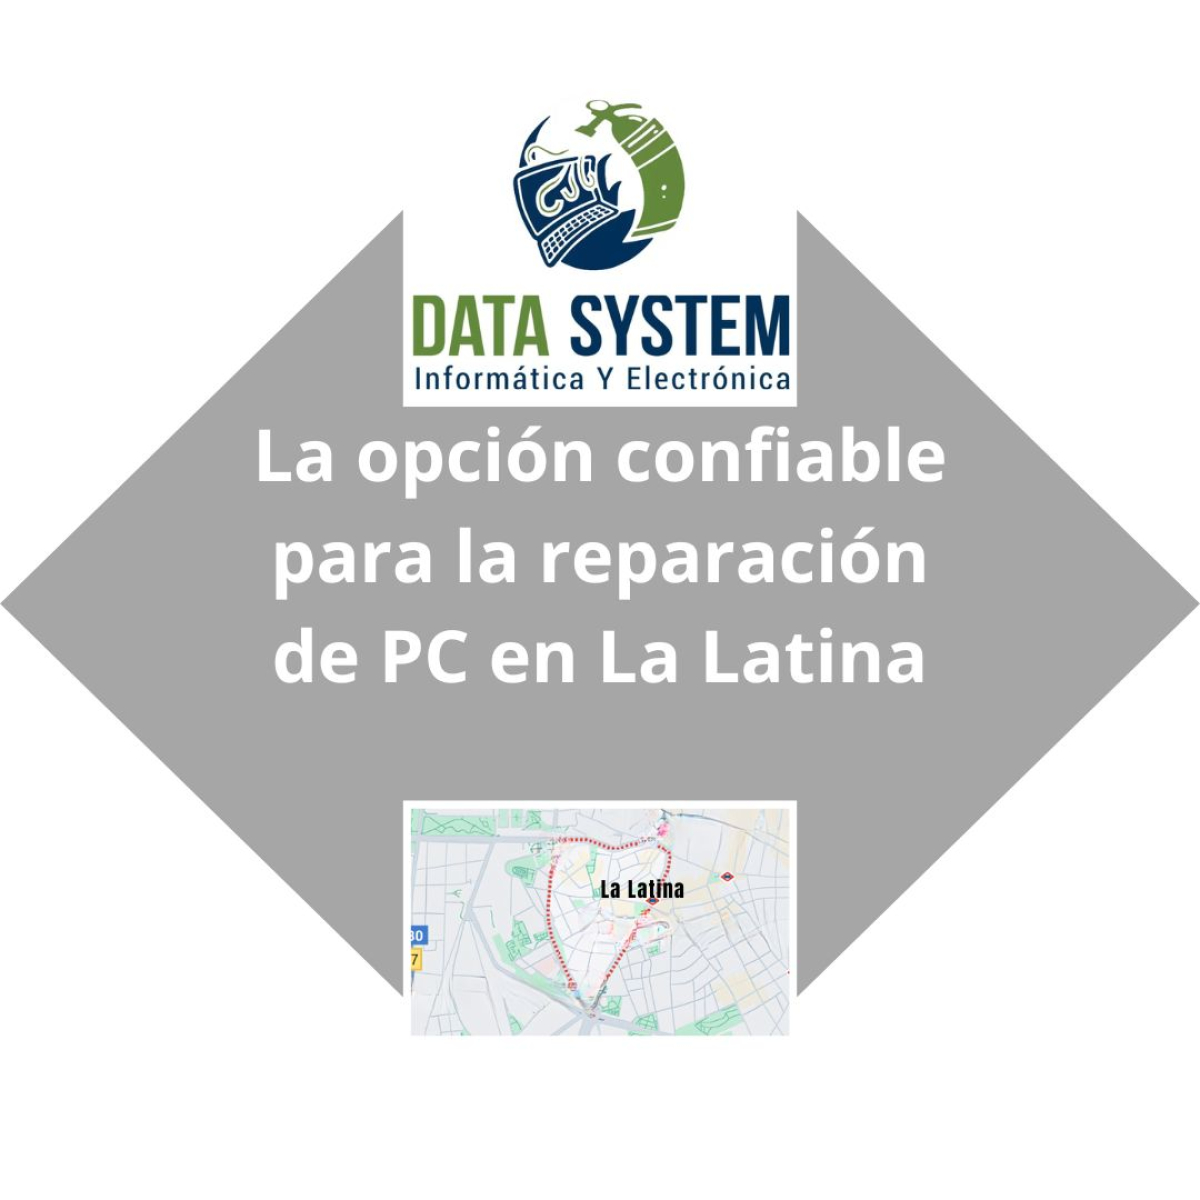 DATA SYSTEM - La opcion confiable para la reparacion de PC en La Latina